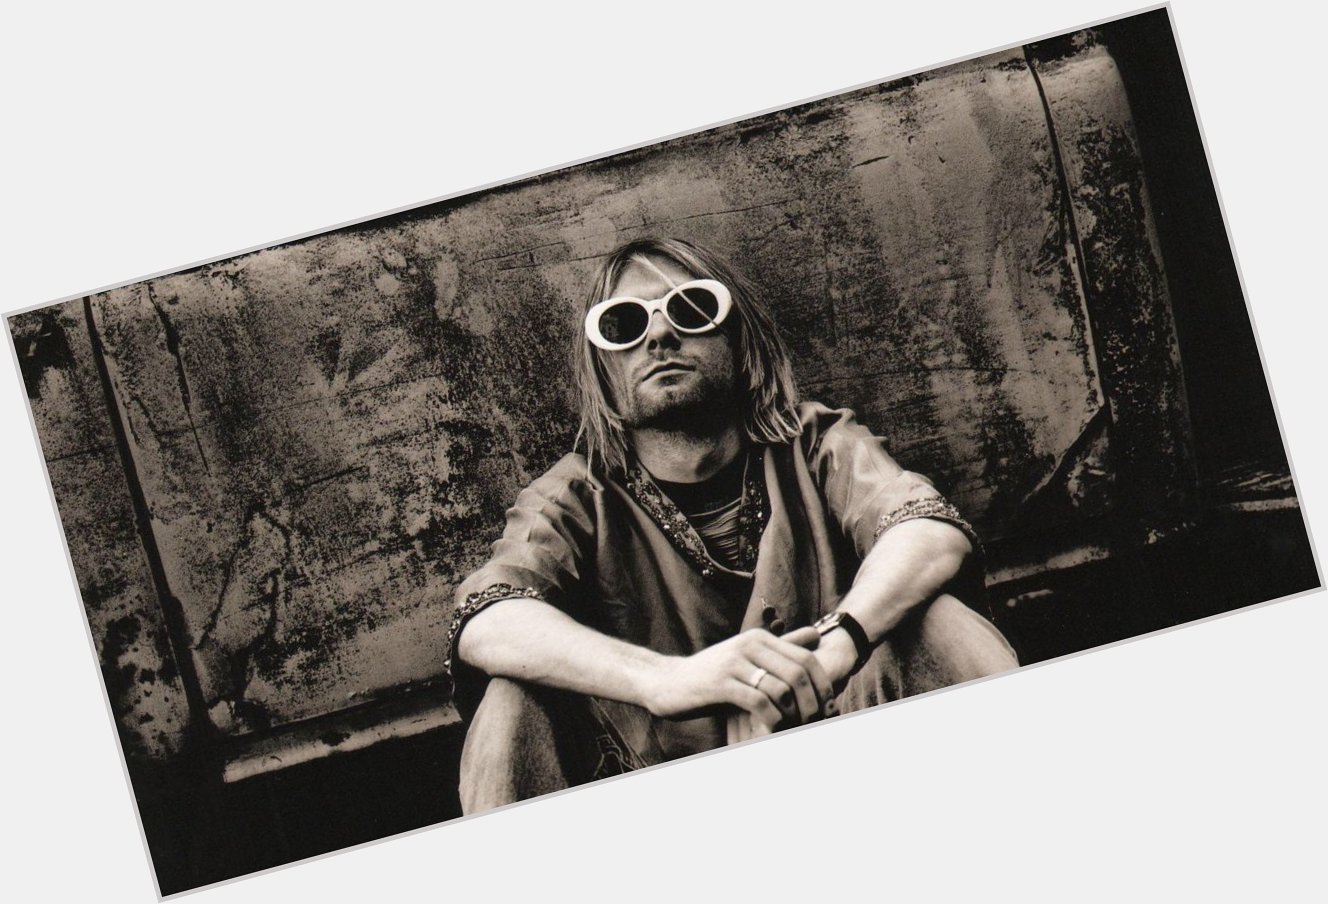 Happy Birthday Kurt Cobain! 